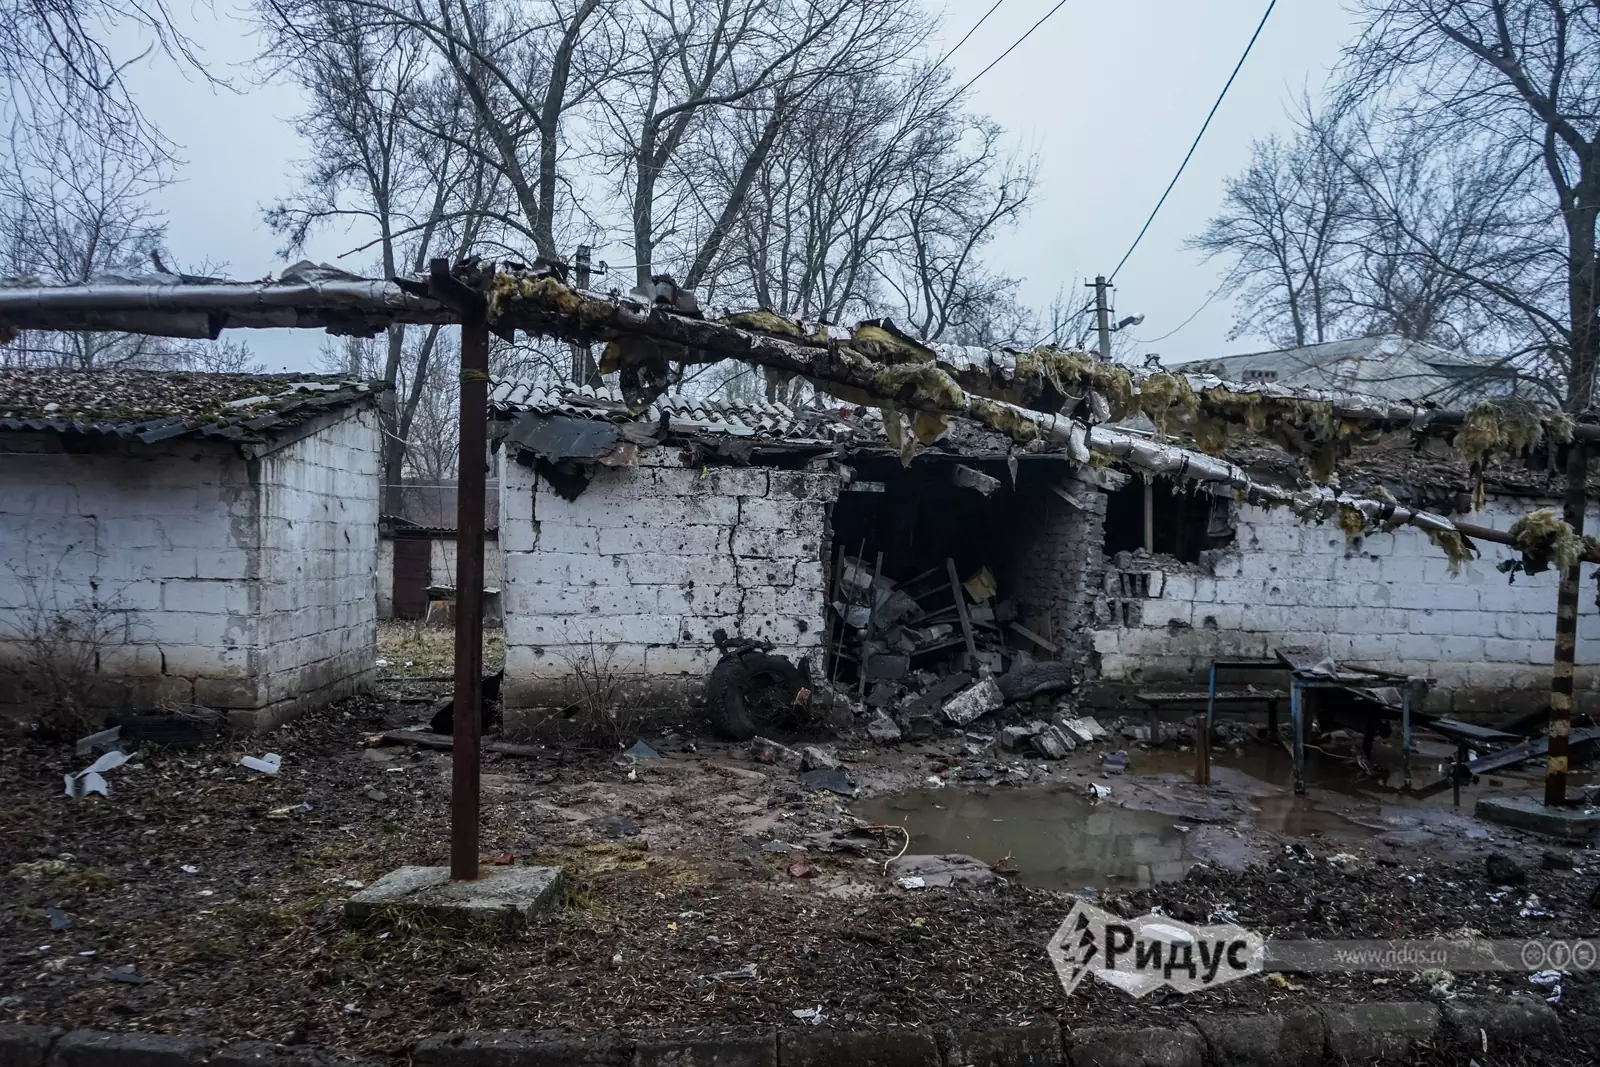 Обстрелы за последние дни. Разбомбленный дом Киевский район Донецка.